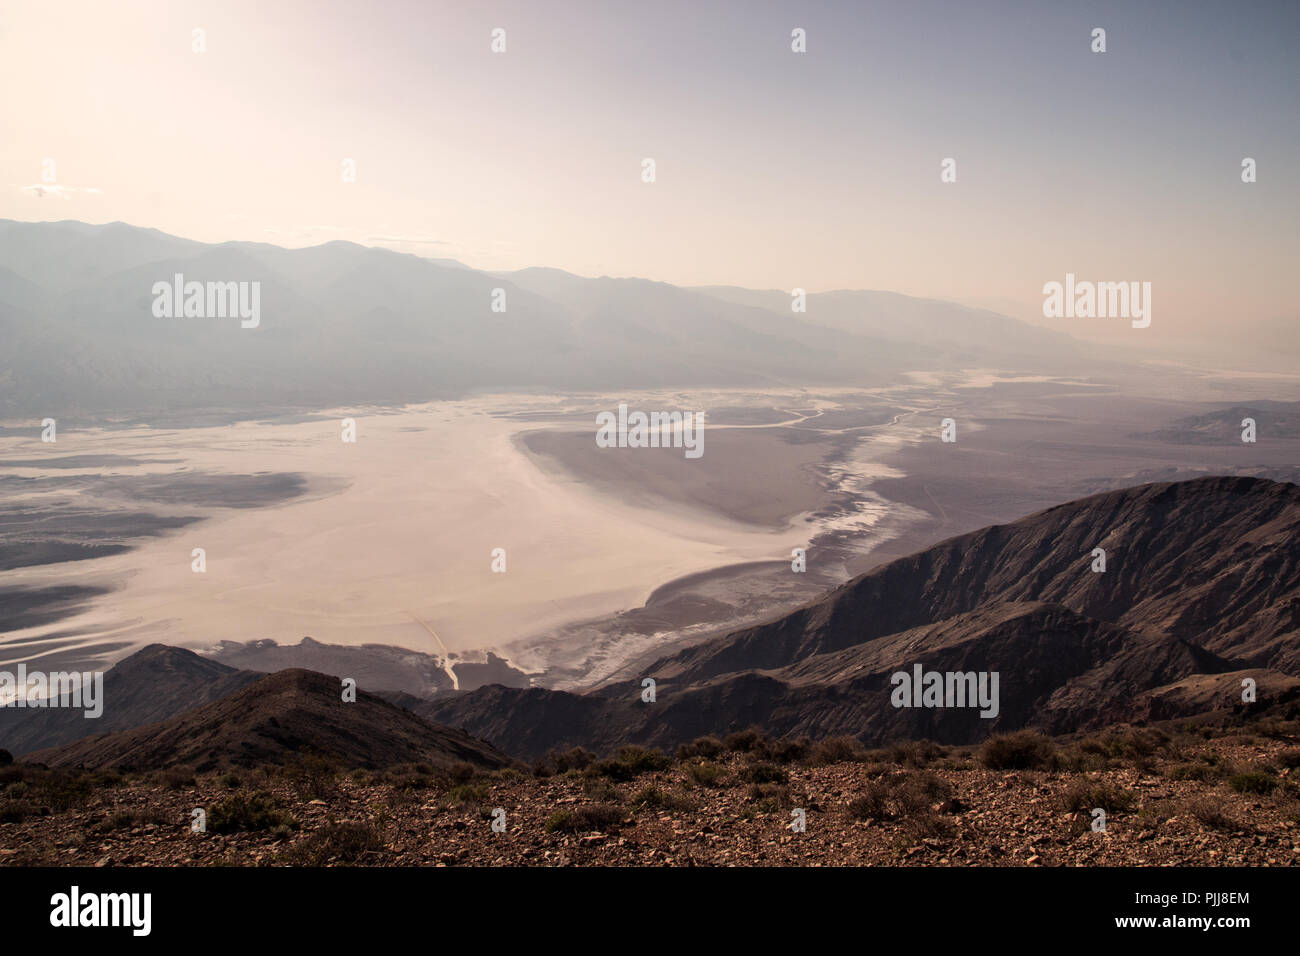 Dante's view, spectaculaire vue panoramique sur le sud du bassin de la vallée de la mort et Devil's Golf Course de l'halite solide sel, montagnes paysage brumeux Banque D'Images